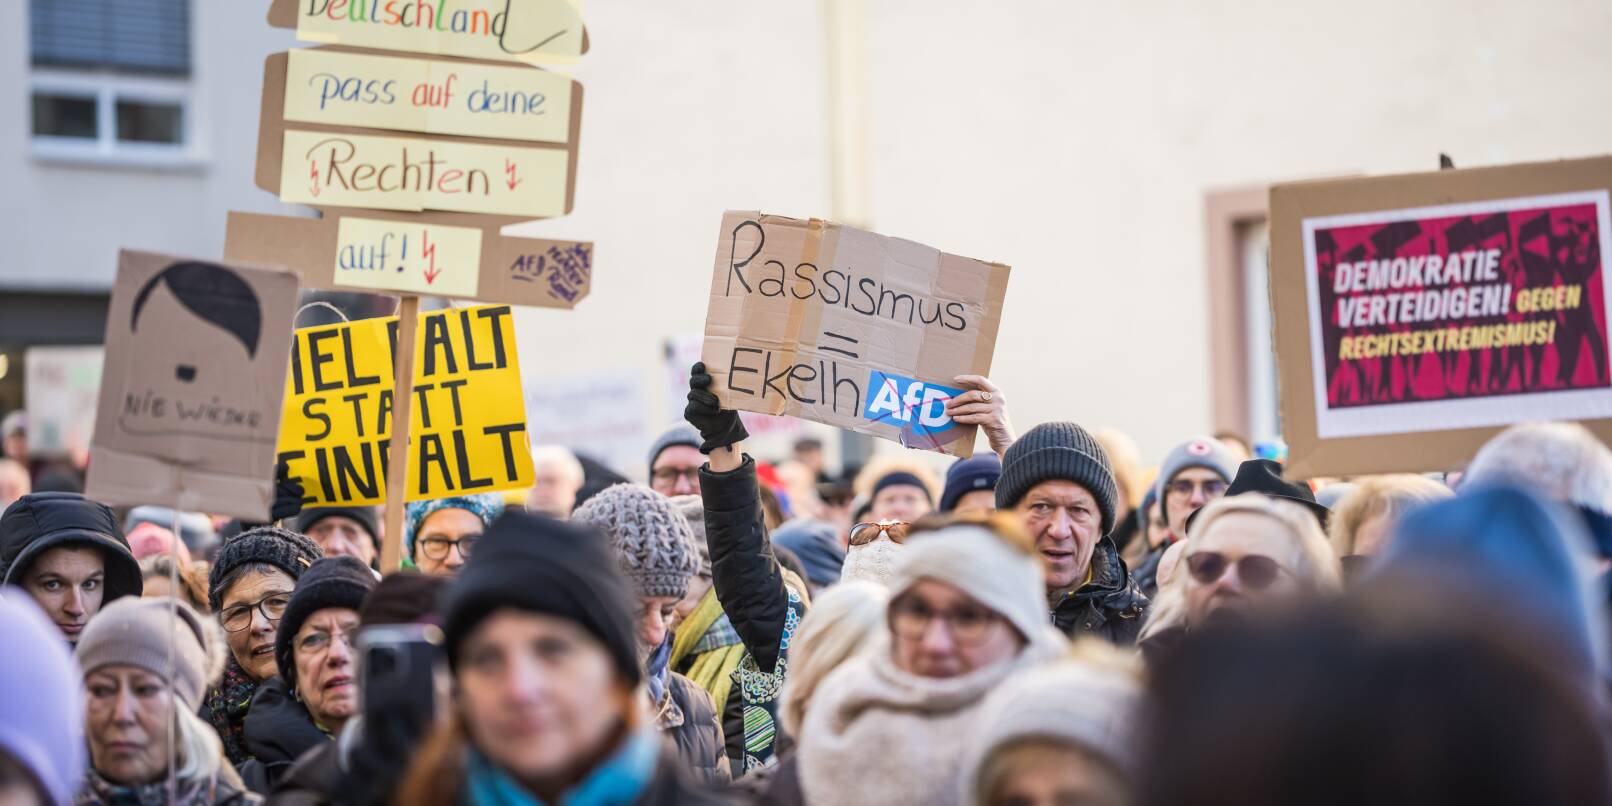 "EkelhAfD" ist auf einem Protestschild zu lesen. Die Kundgebung richtet sich aber nicht nur gegen die Alternative für Deutschland (AfD), sondern allgemein gegen rechts.